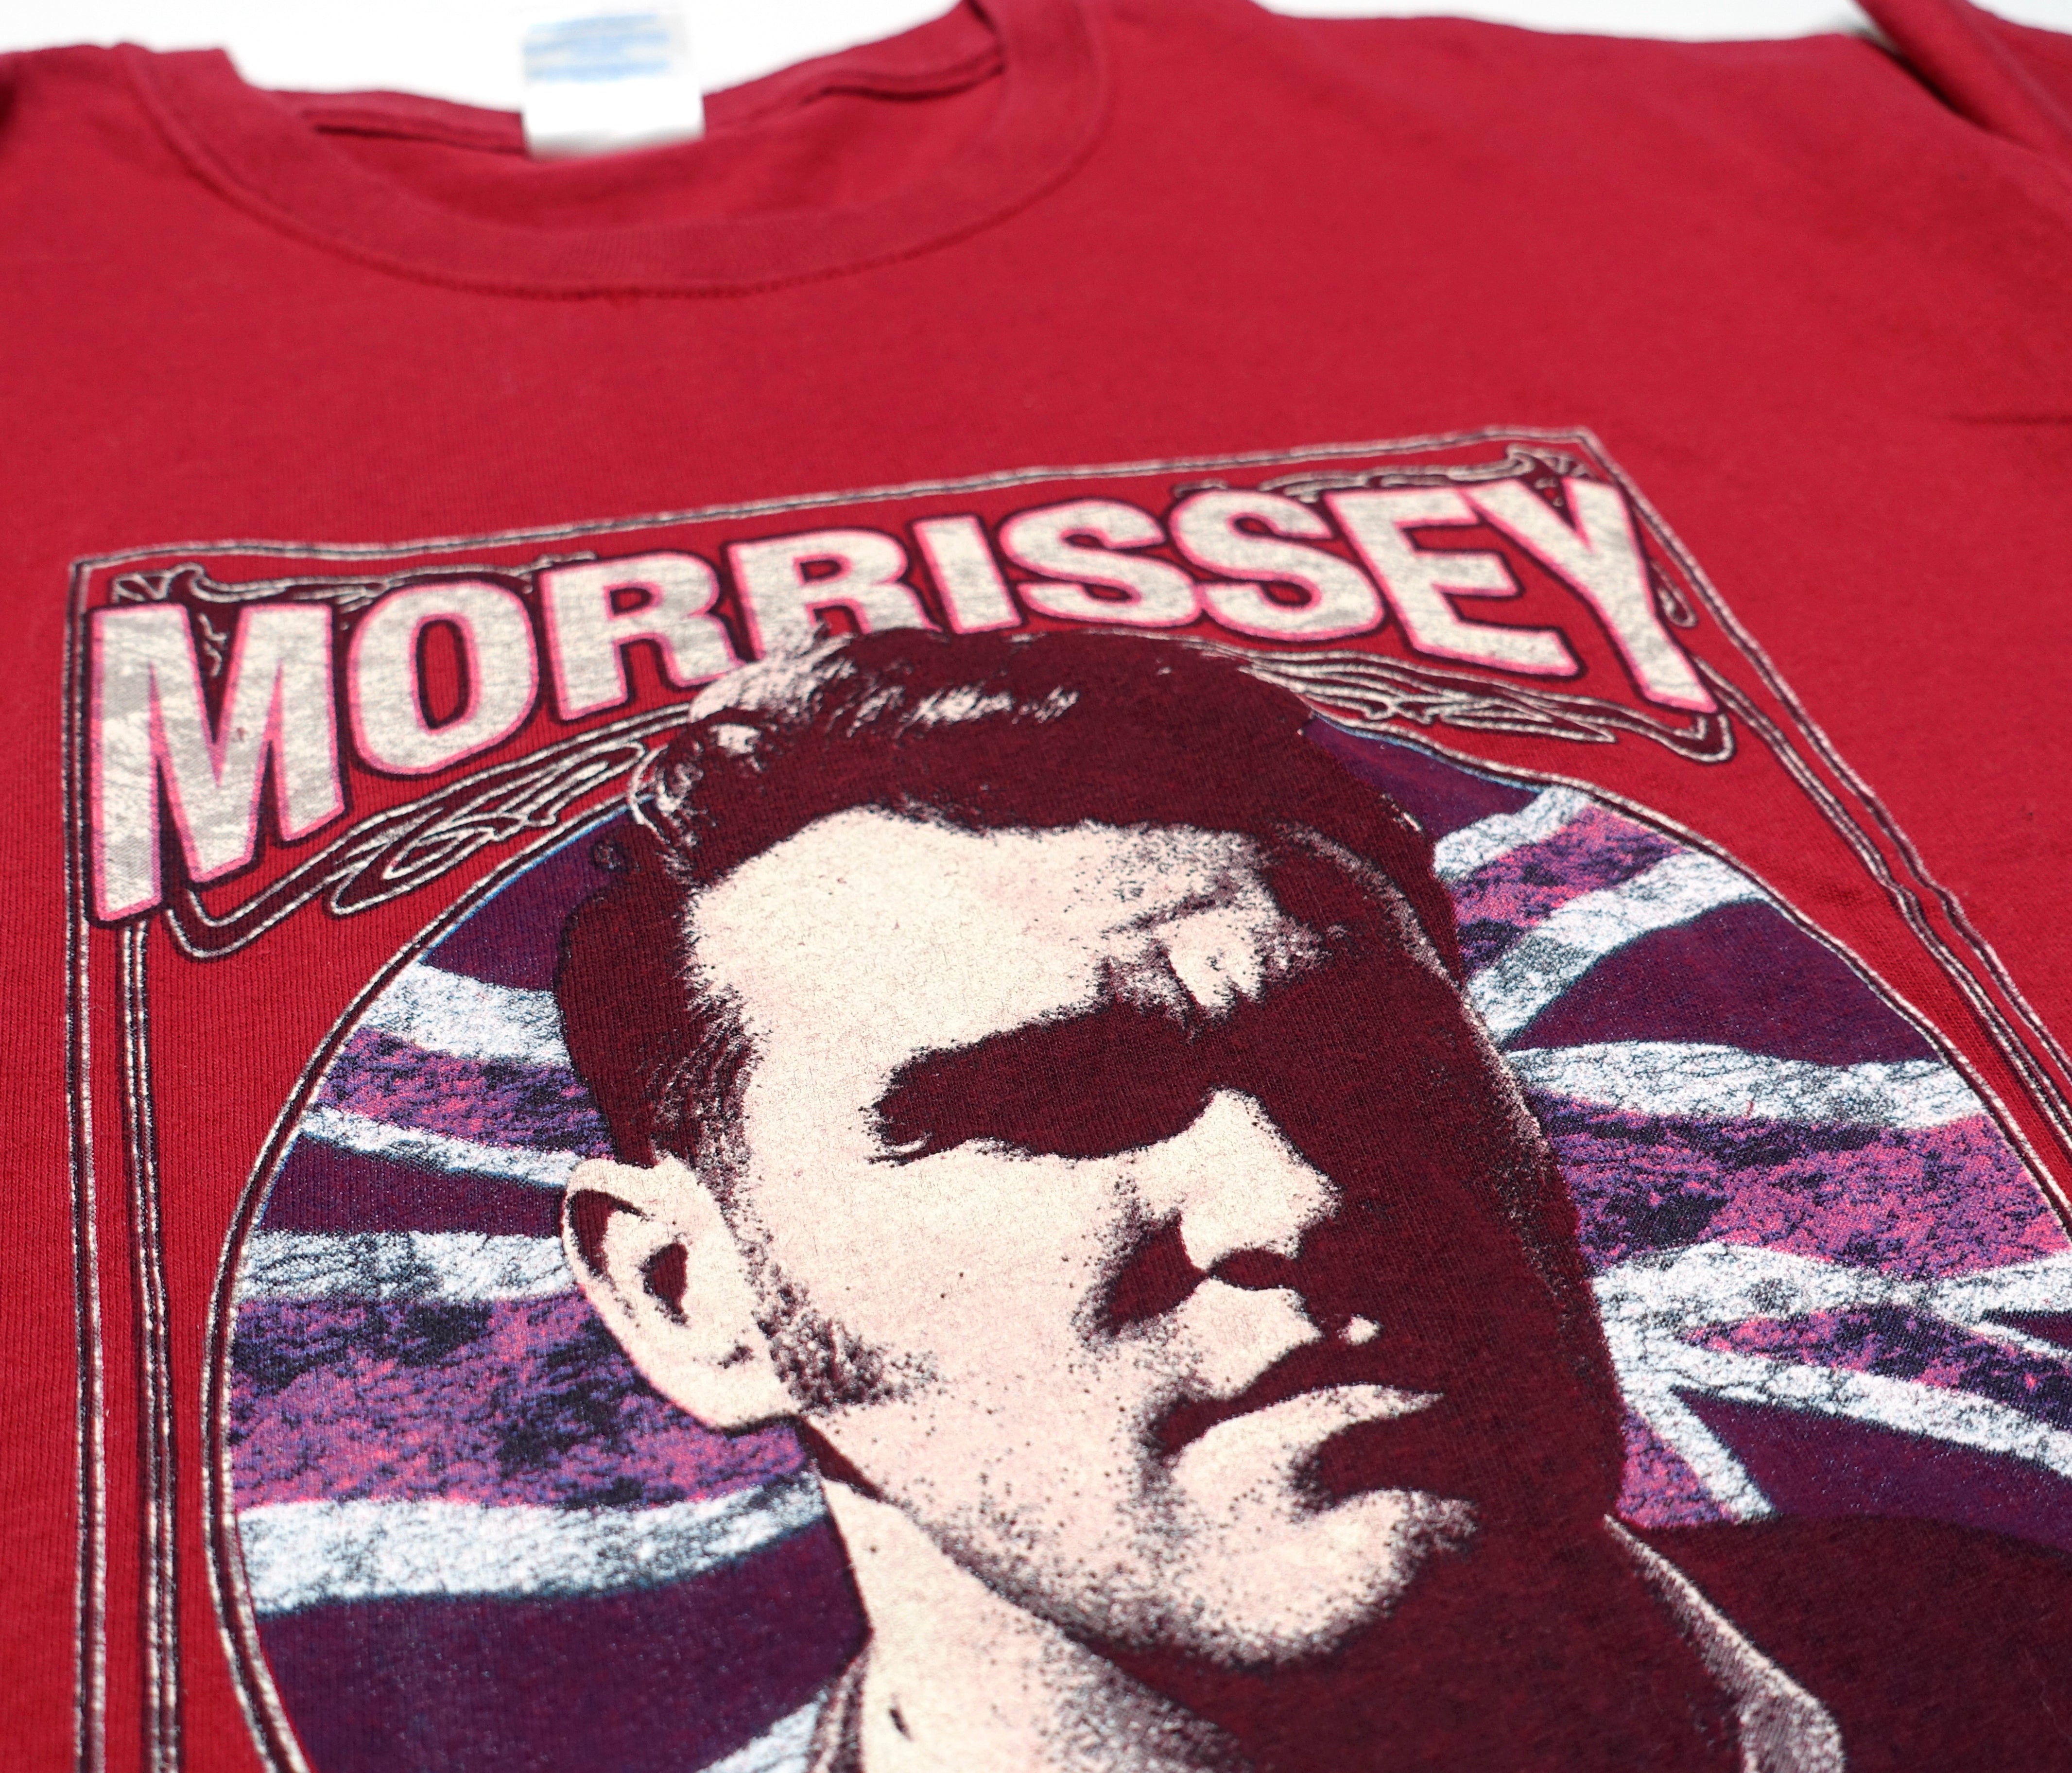 Morrissey - Swords Union Jack 2009 Tour Shirt Size Large